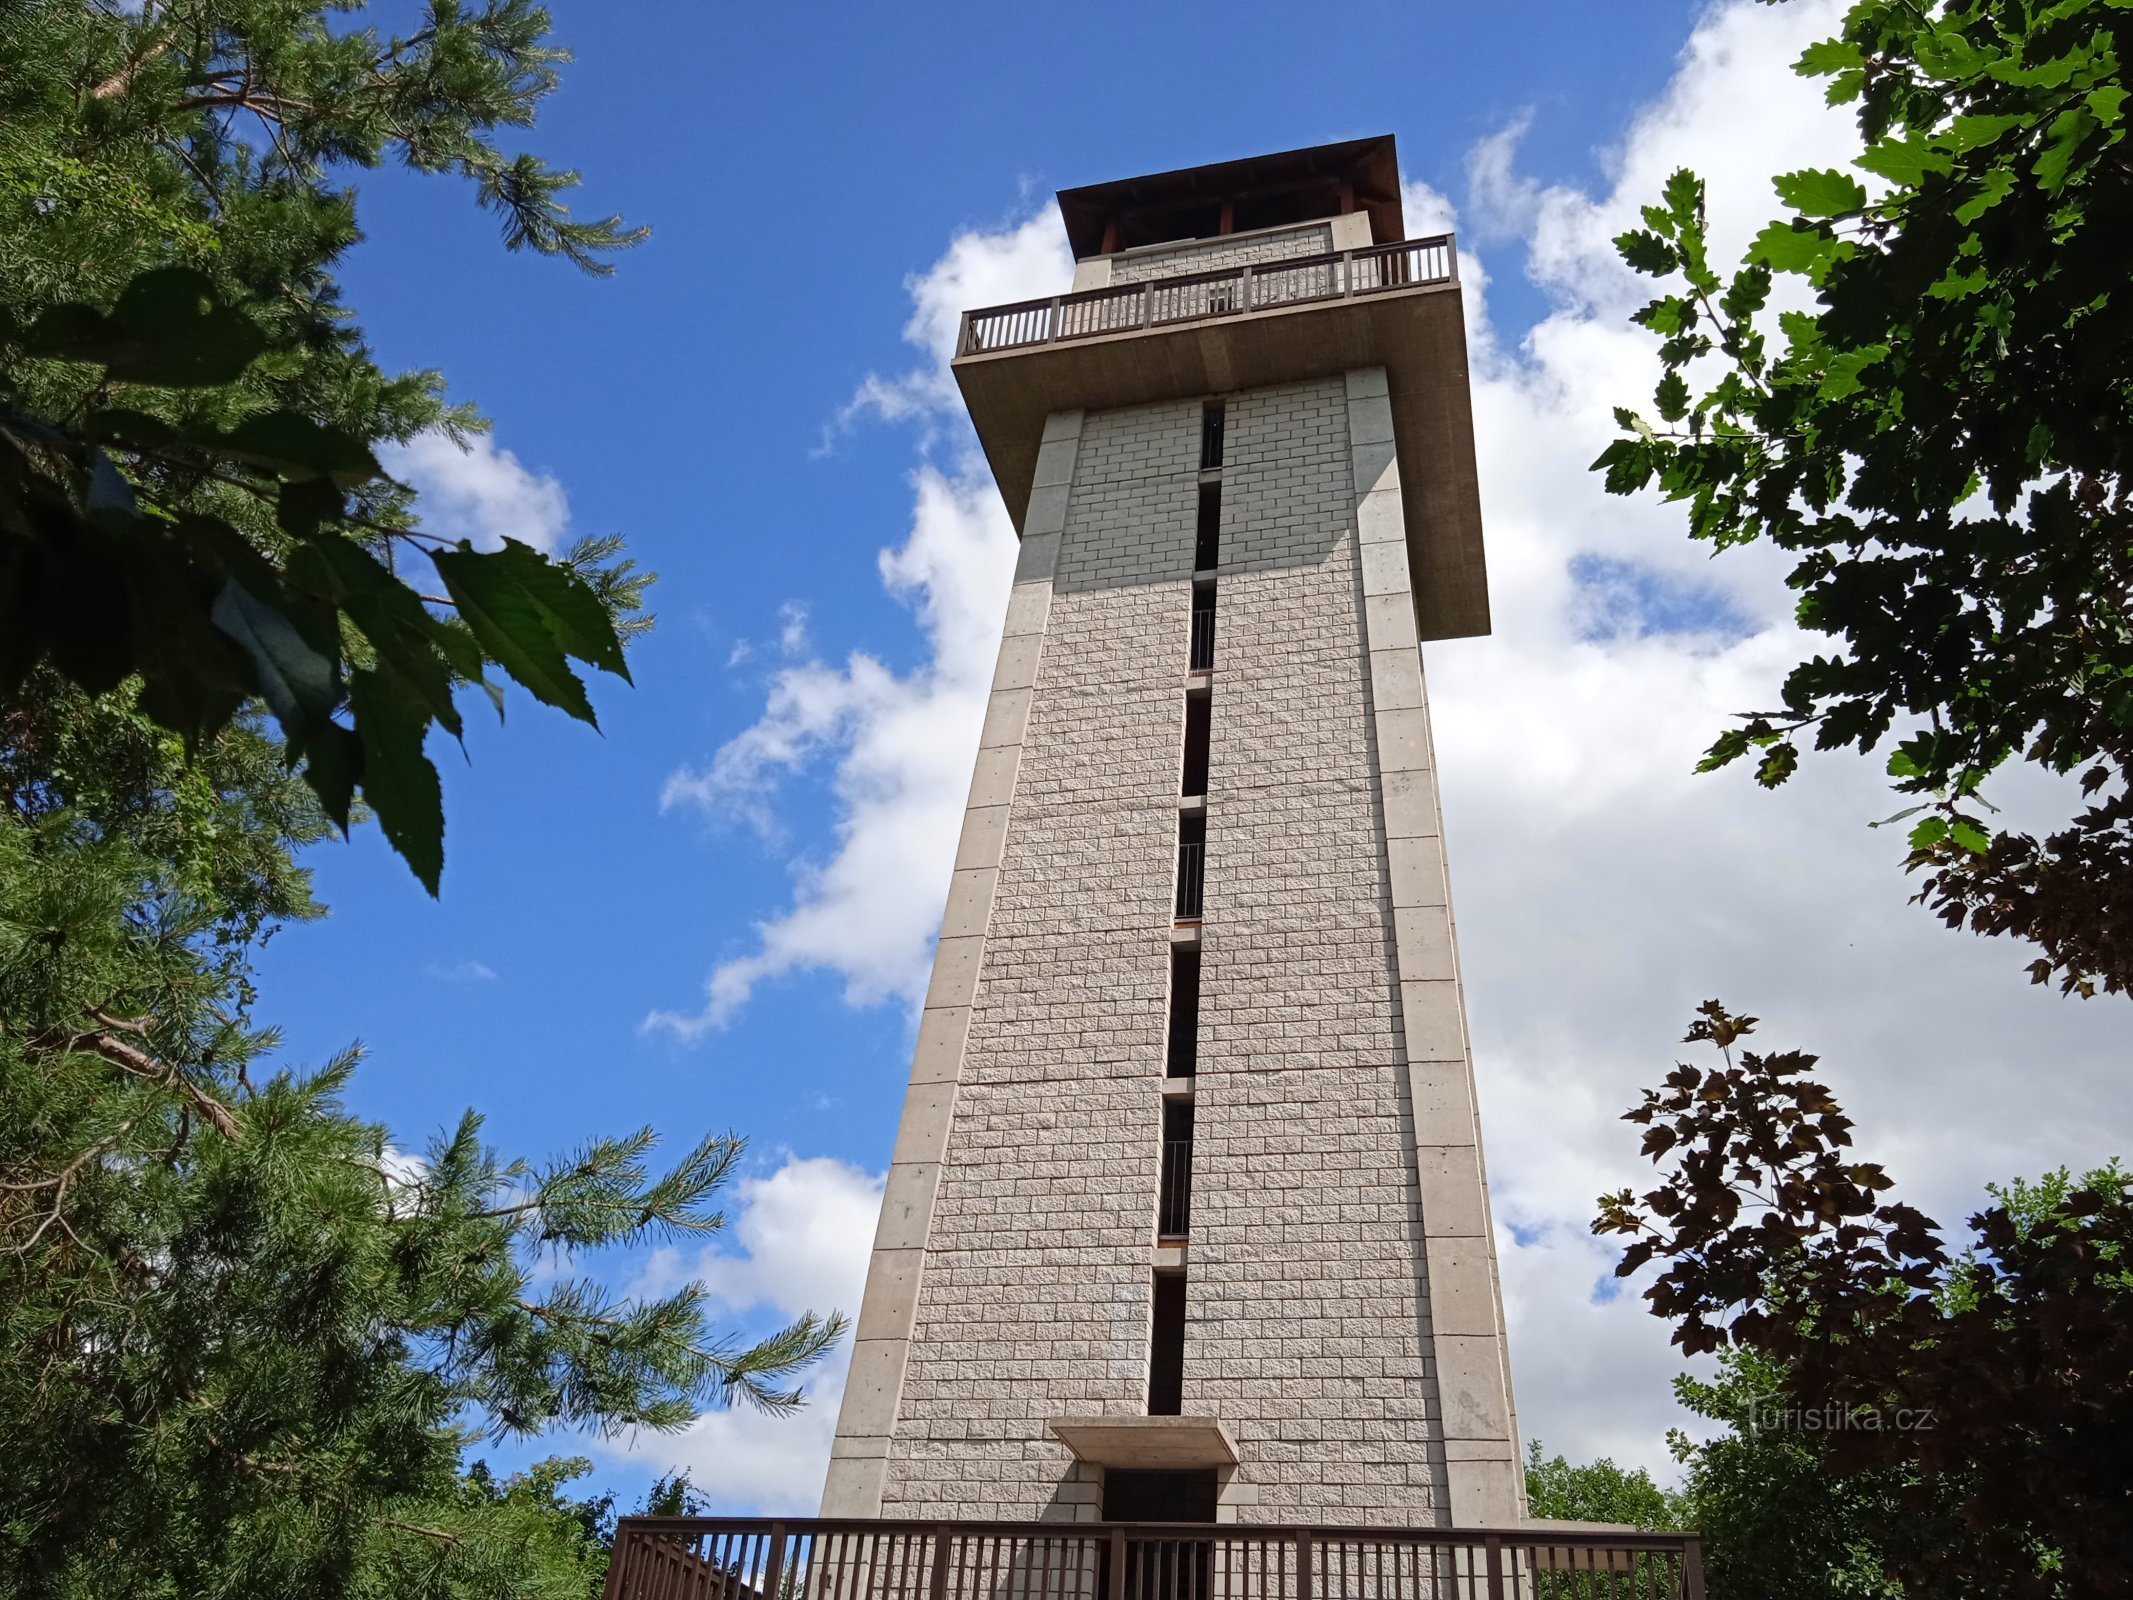 Lookout tower Klucanina - Tišnovsko